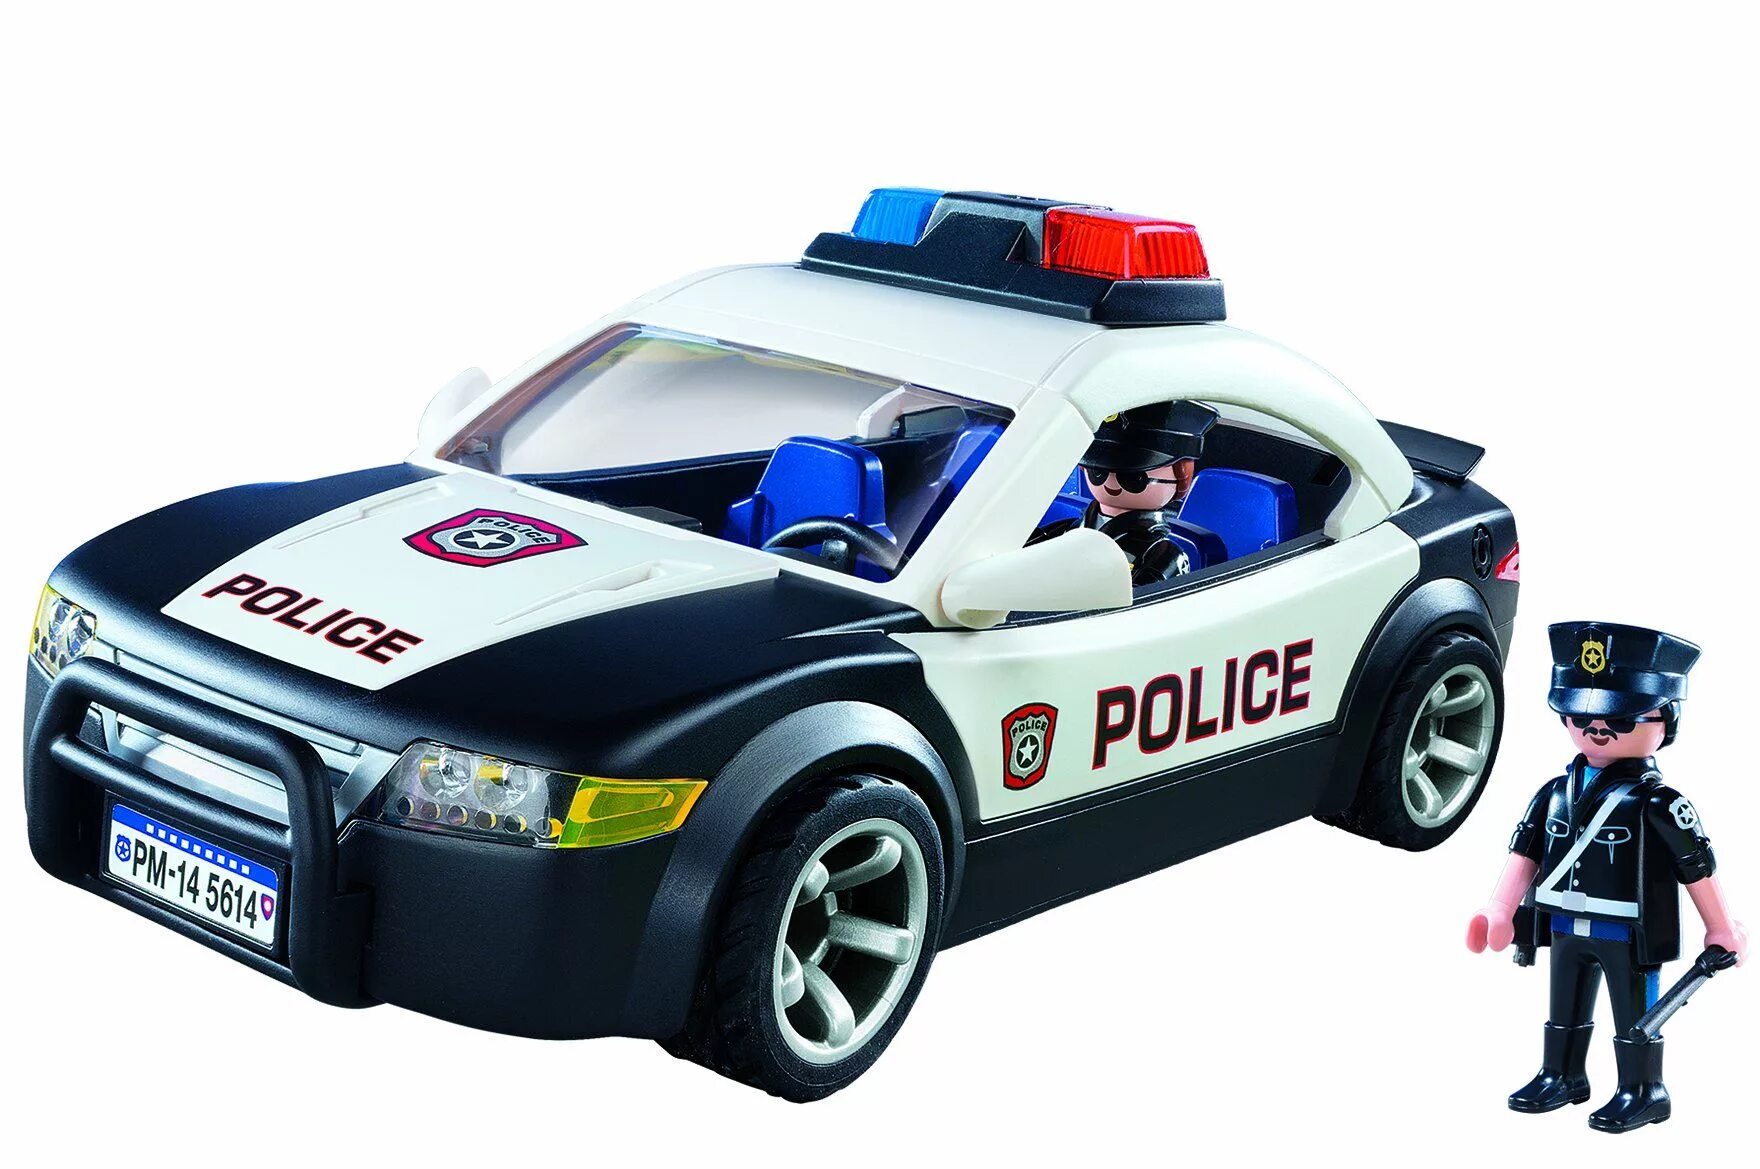 Полицейская машинка картинка. Плеймобил полицейский автомобиль 5673. Плеймобиль полиция полиц маш. Playmobil Polizei машинка полиция. Playmobil City Action Police car 5673.